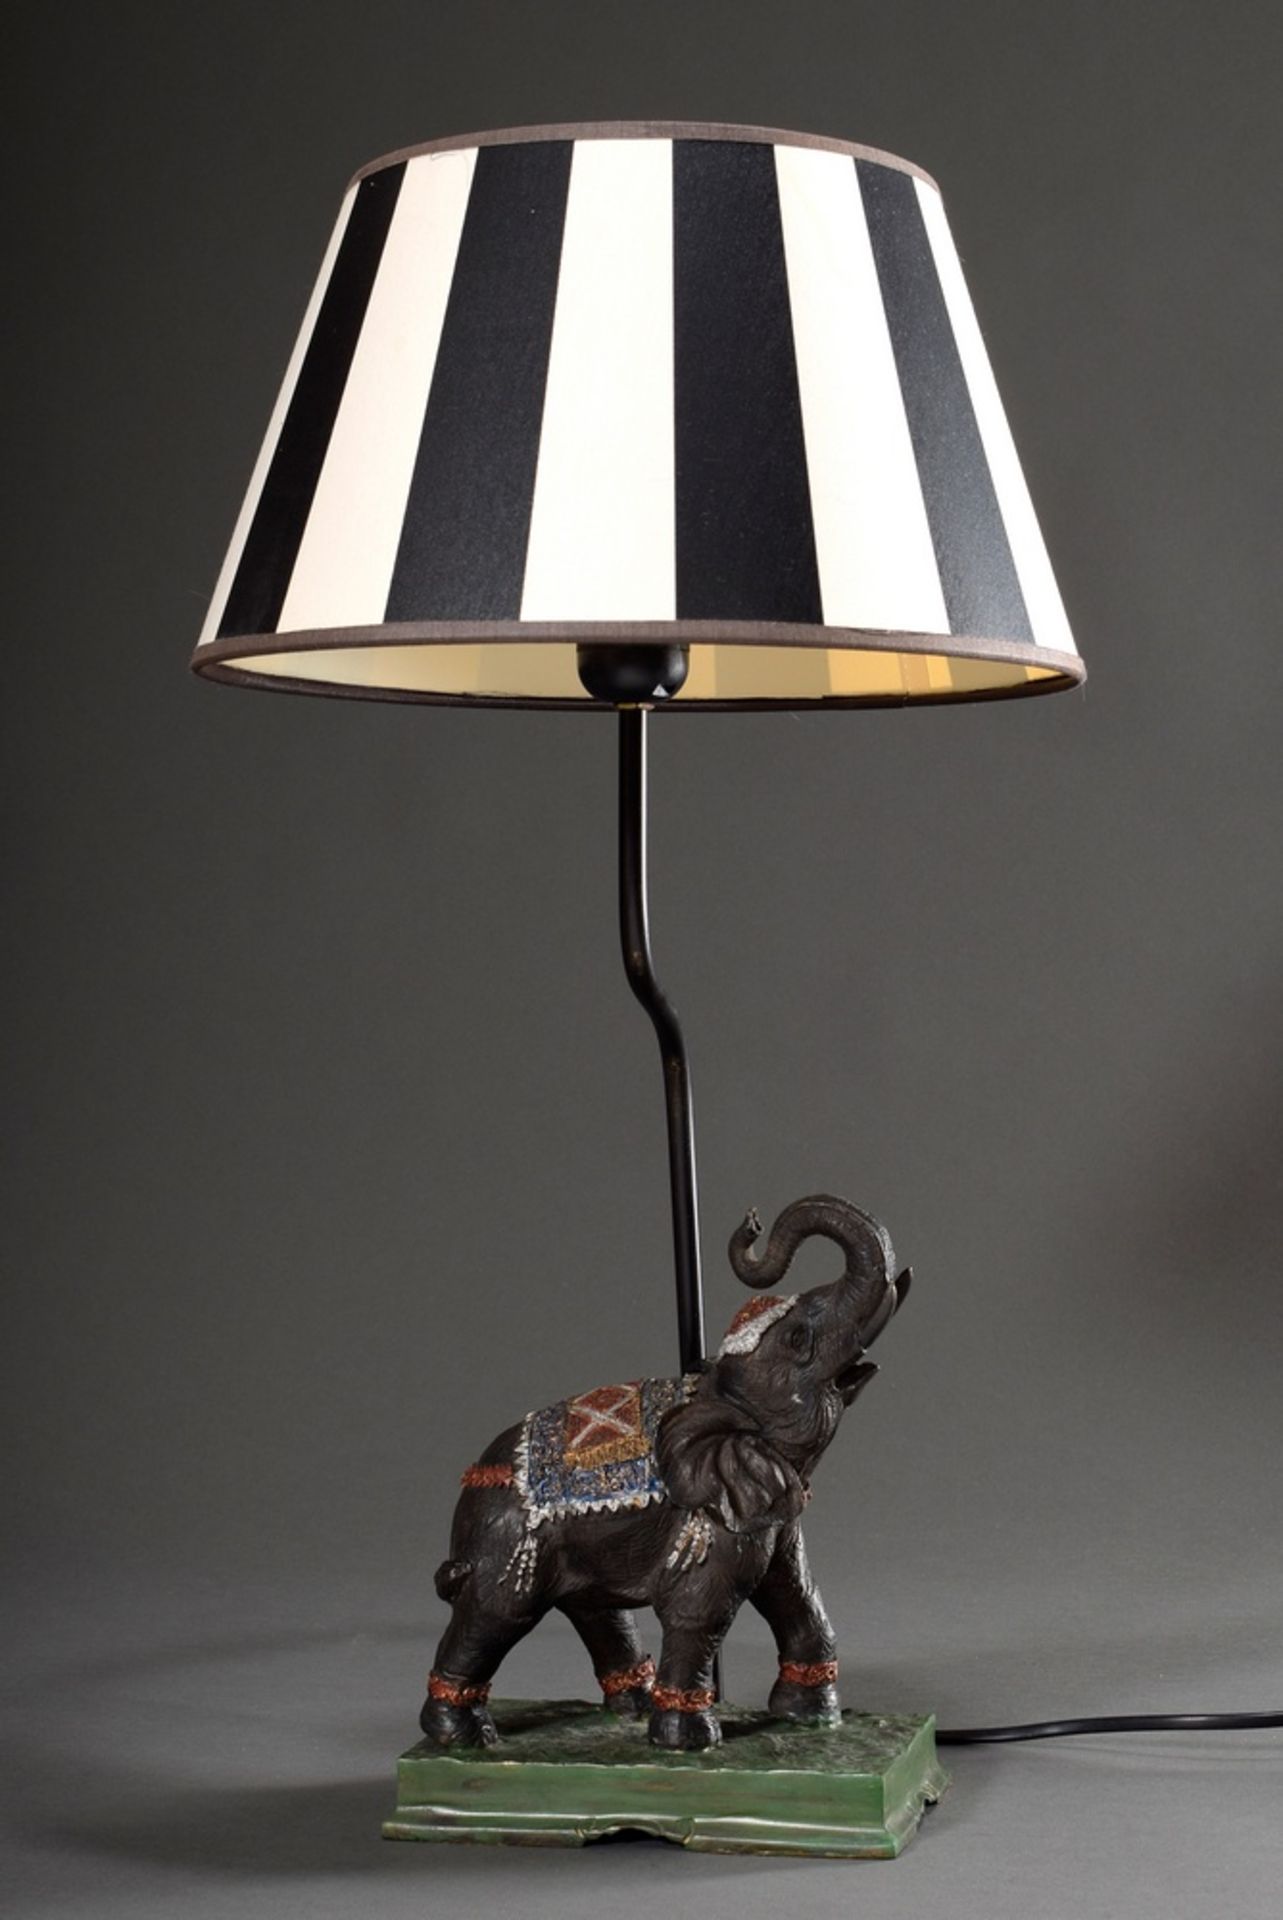 Moderne Tischlampe "Elefant", farbig bemaltes Metall, schwarz-weiß gestreifter Schirm, H. 54,5cm